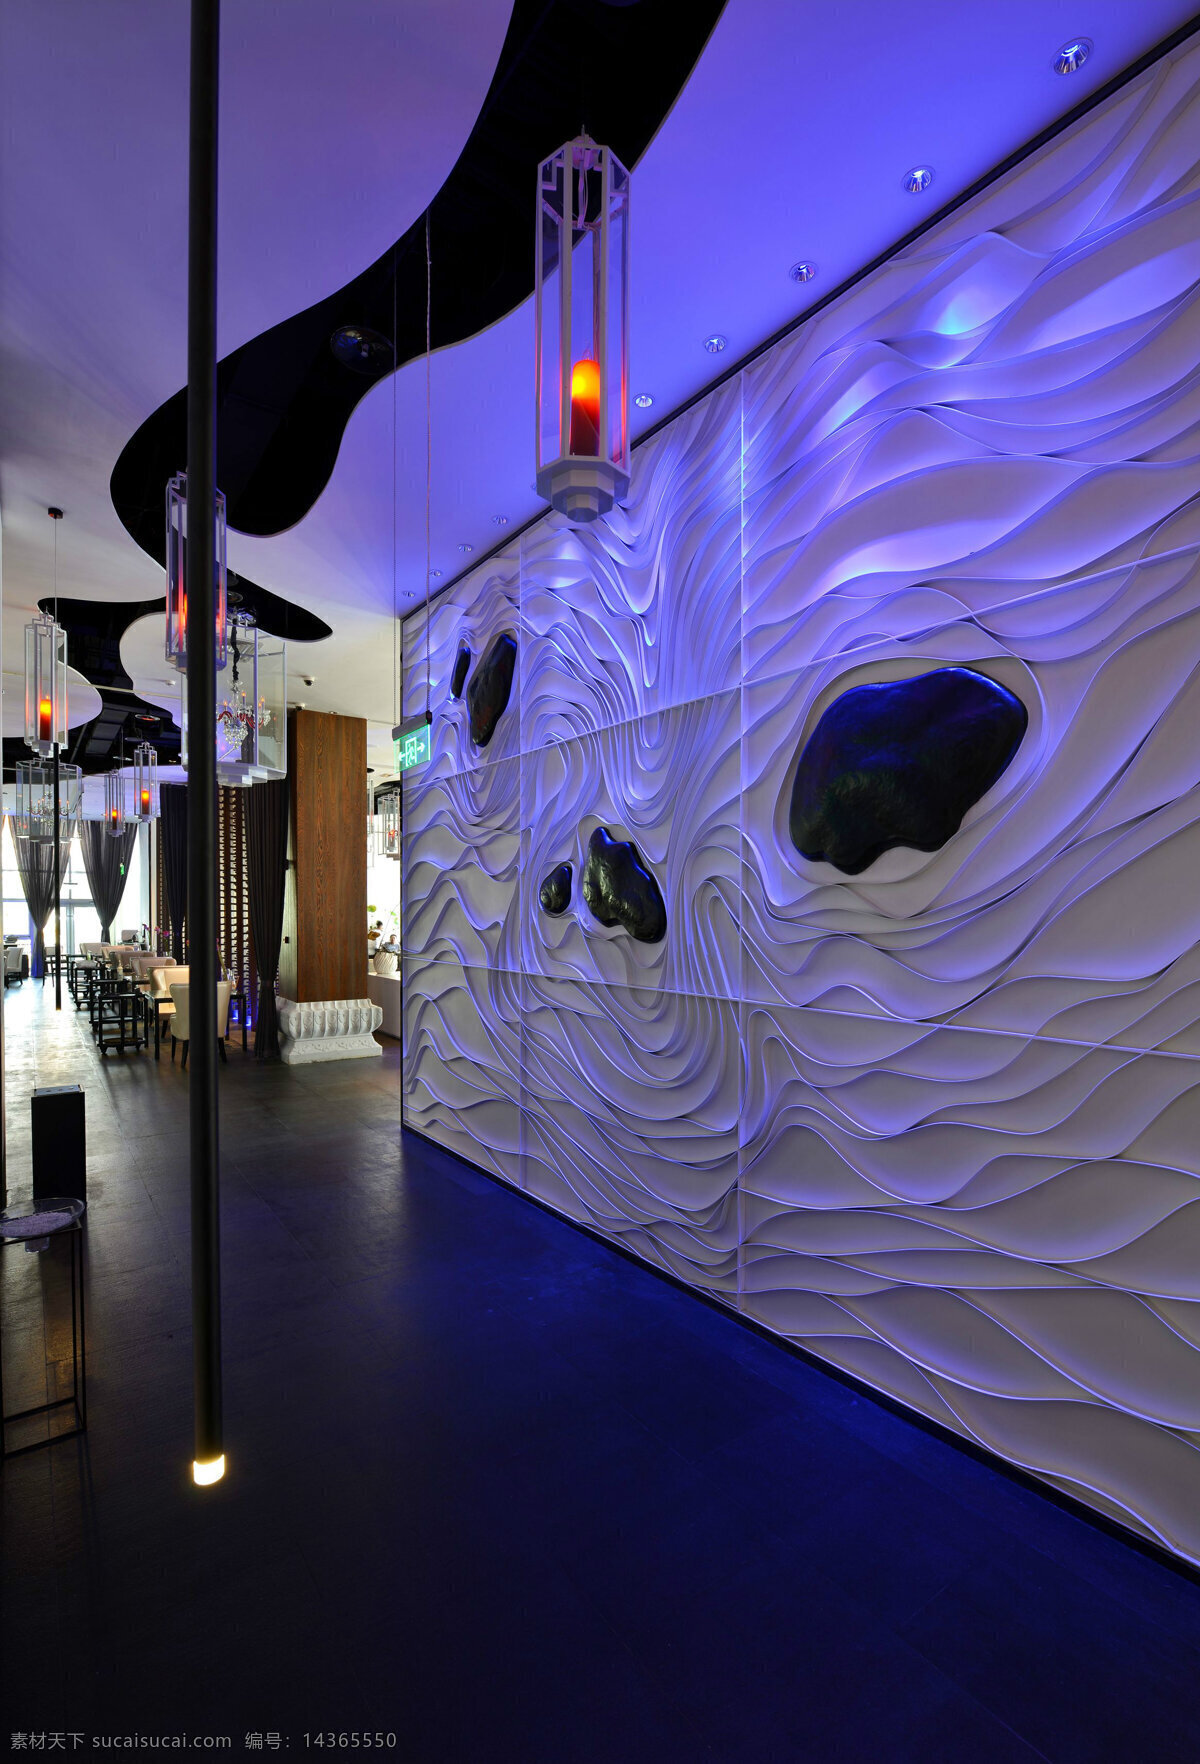 创意 室内 餐厅 背景 墙 效果图 室内设计 装修 装修设计 环境设计 时尚 高清 背景墙